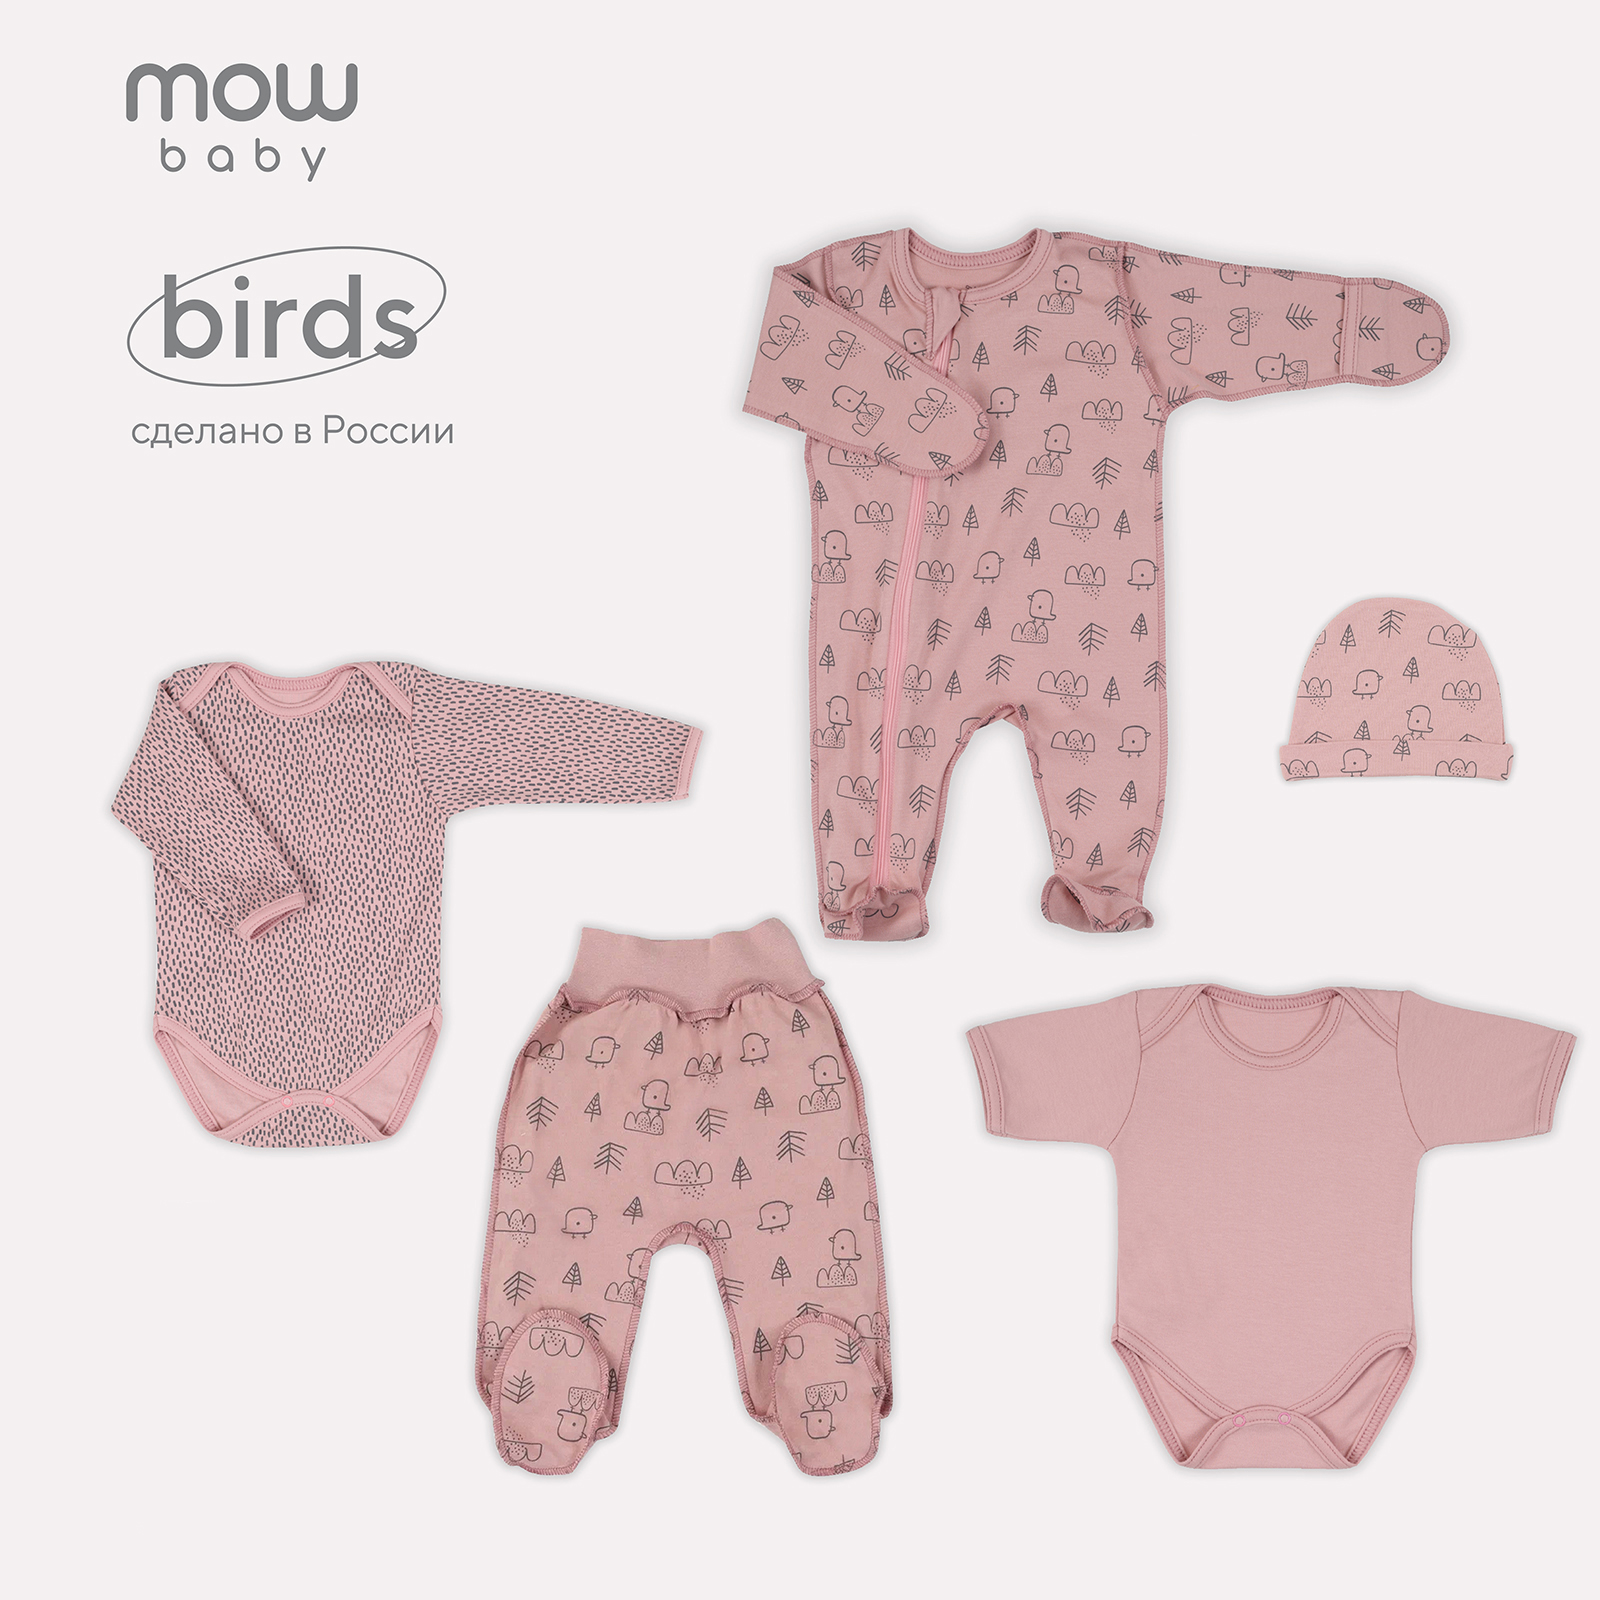 Комплект одежды для новорожденного MowBaby Birds Rose 5-82 р.62 (5 предметов) комплект одежды для новорожденного mowbaby birds rose 5 82 р 62 5 предметов